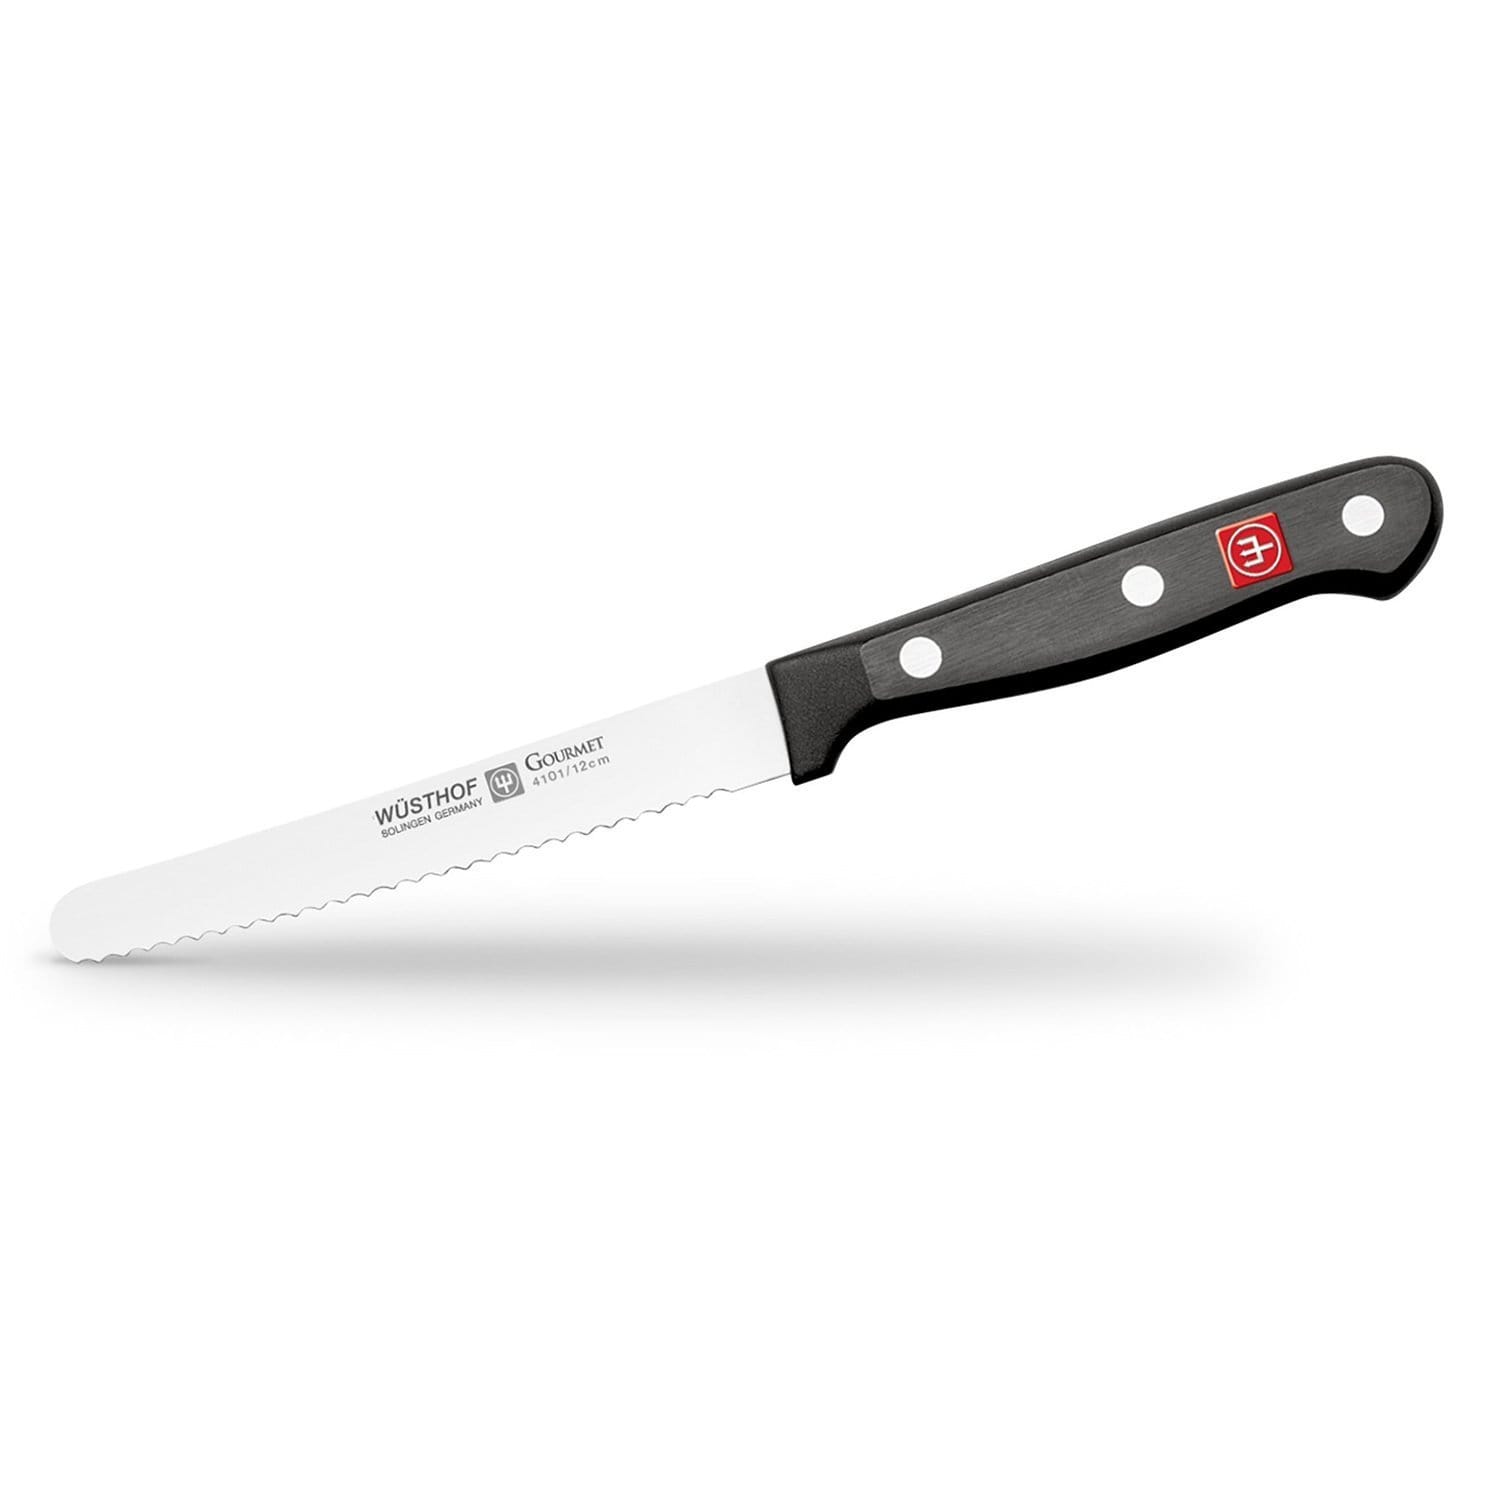 Wusthof سكين طماطم ذواقة - أسود وشظية - 4101-7 - جاشنمال هوم